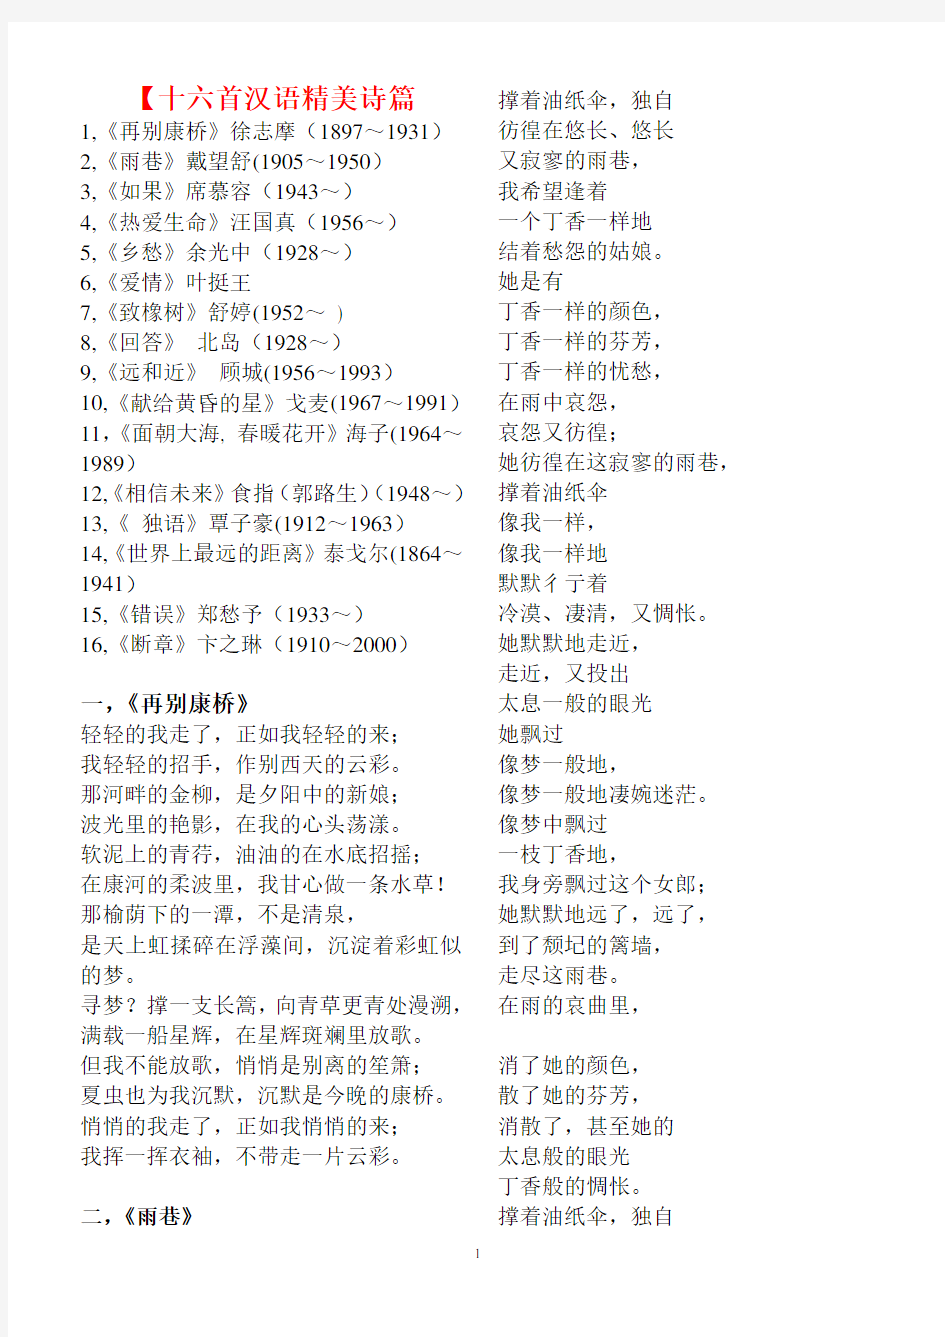 十六首汉语精美诗歌